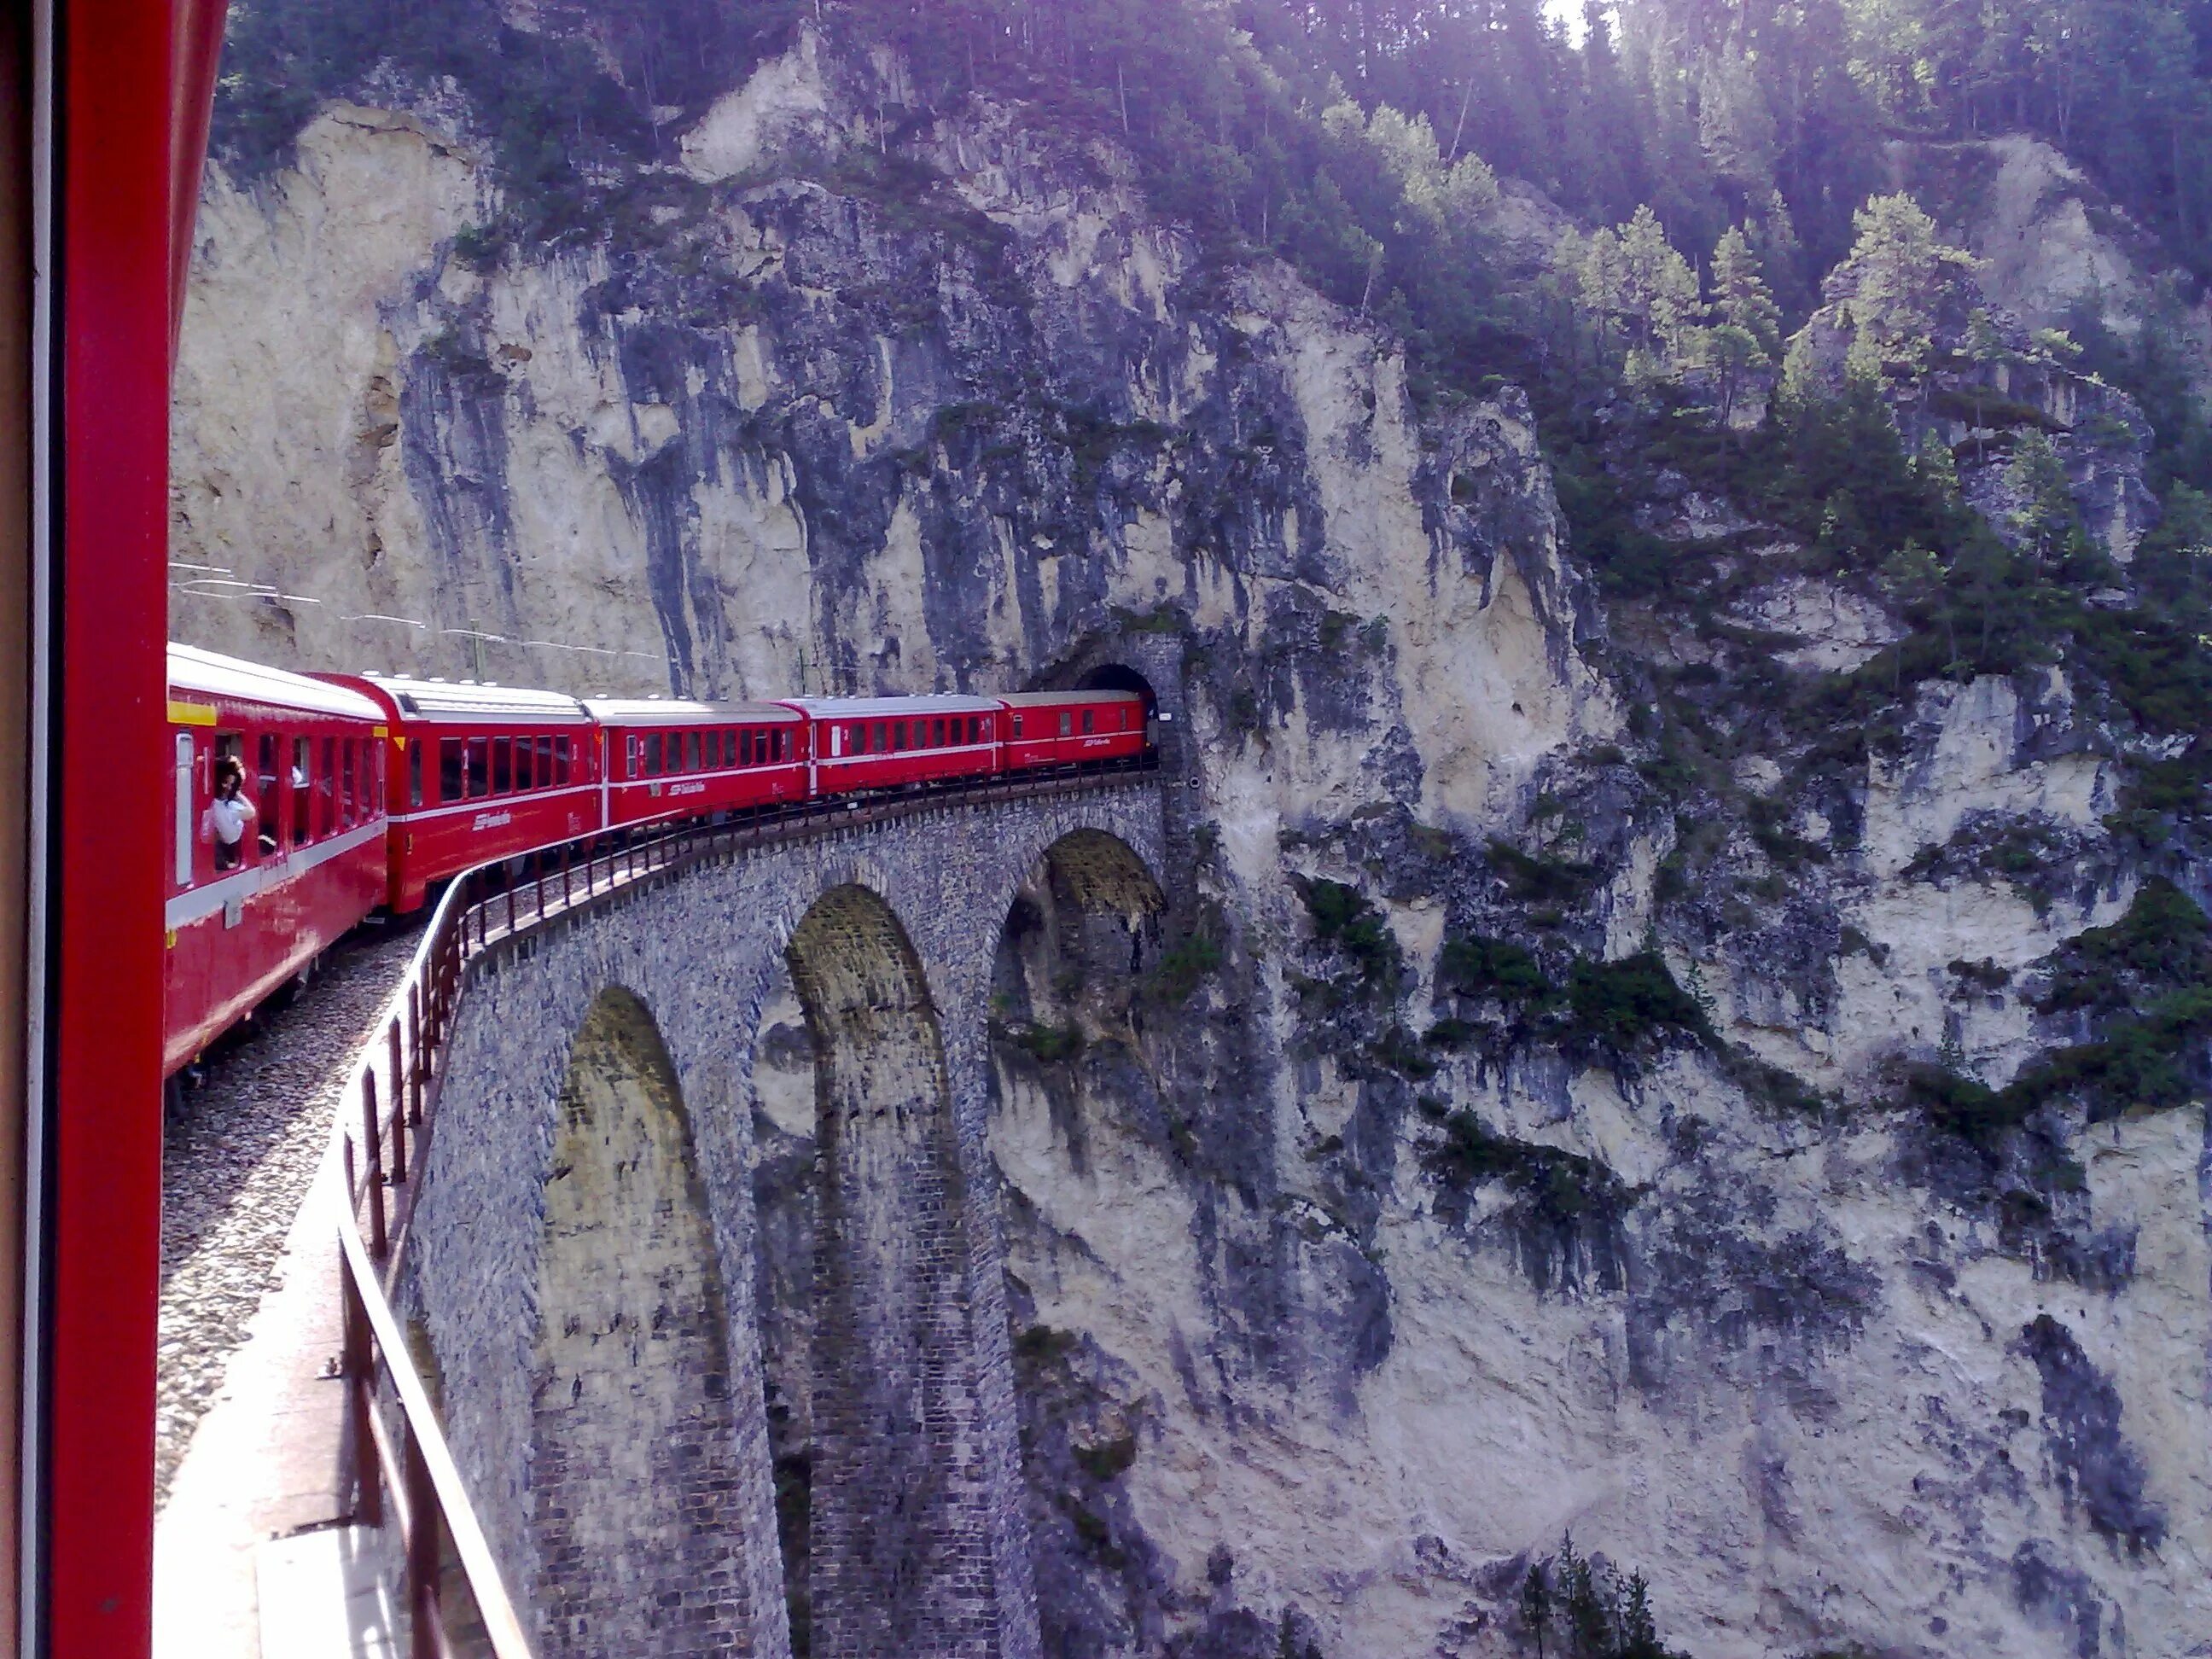 Виадук Ландвассер Швейцария. Железнодорожный мост виадук Ландвассер. Виадук Граубюнден Швейцария. Виадук Ландвассер Швейцария зимой.